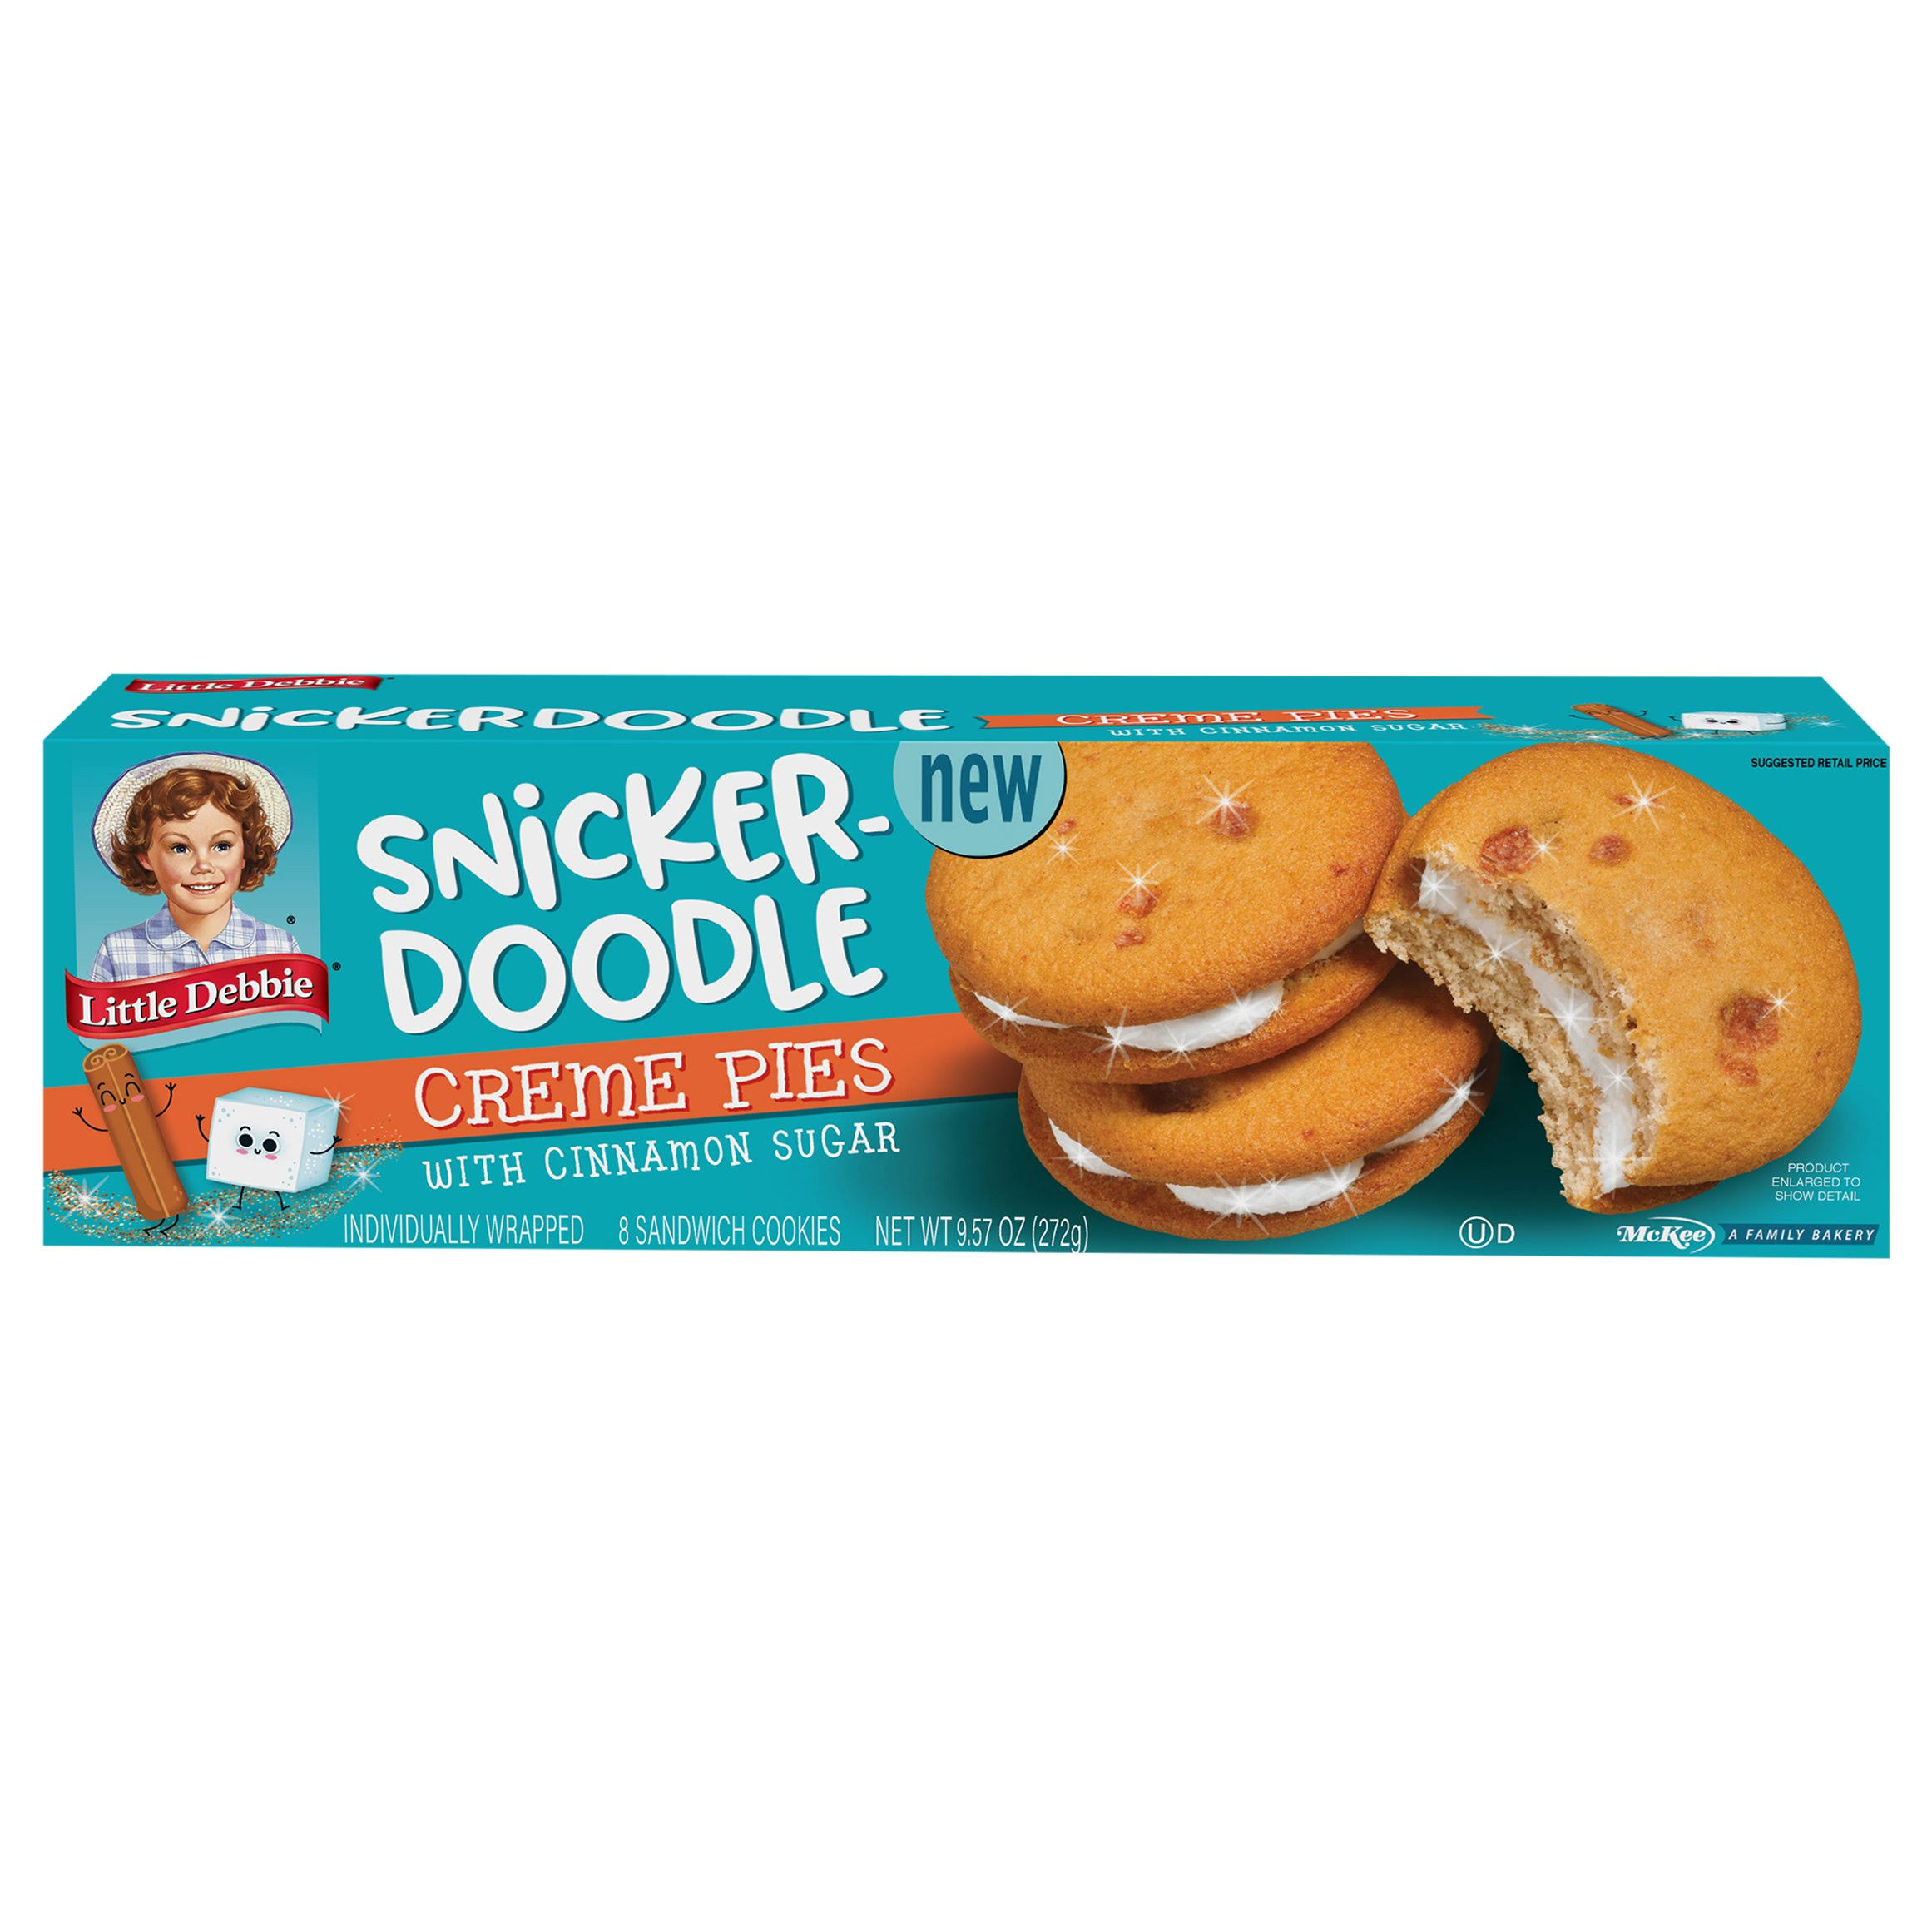 Little Debbie Sandwich Cookies, Creme Pies, Snicker-Doodle - 8 cookies, 9.57 oz